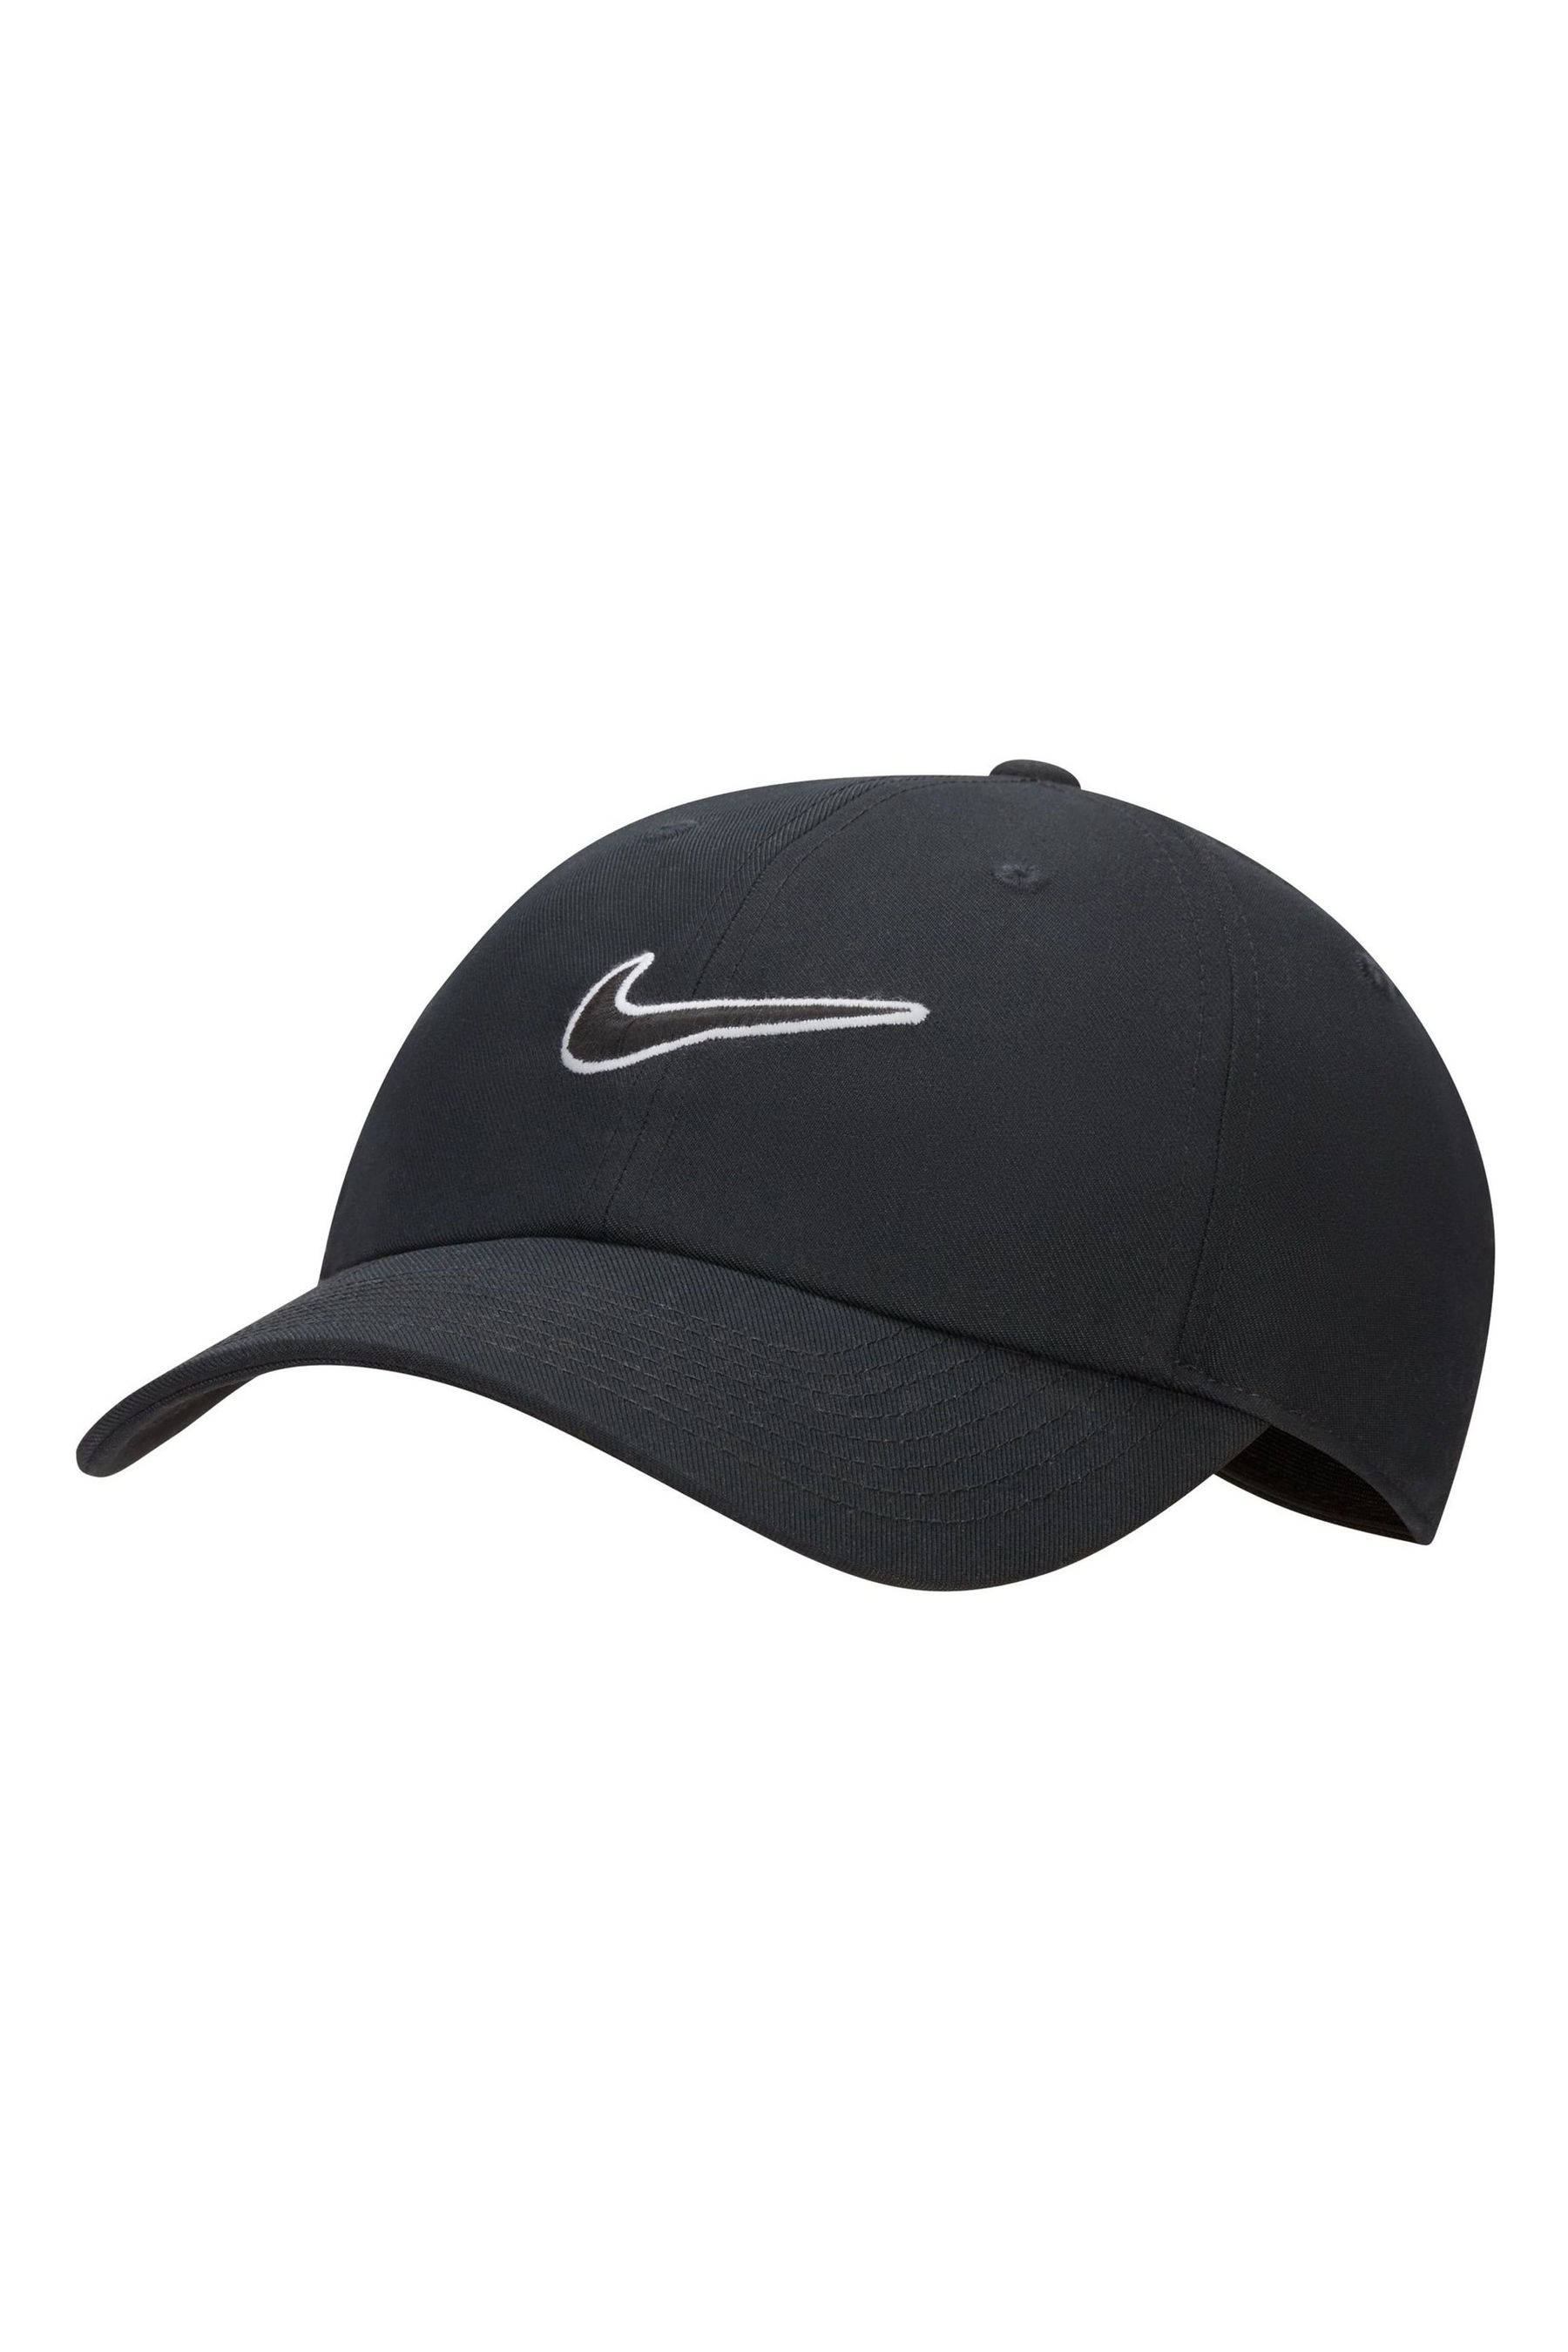 Клубная неструктурированная кепка с галочкой Nike, черный